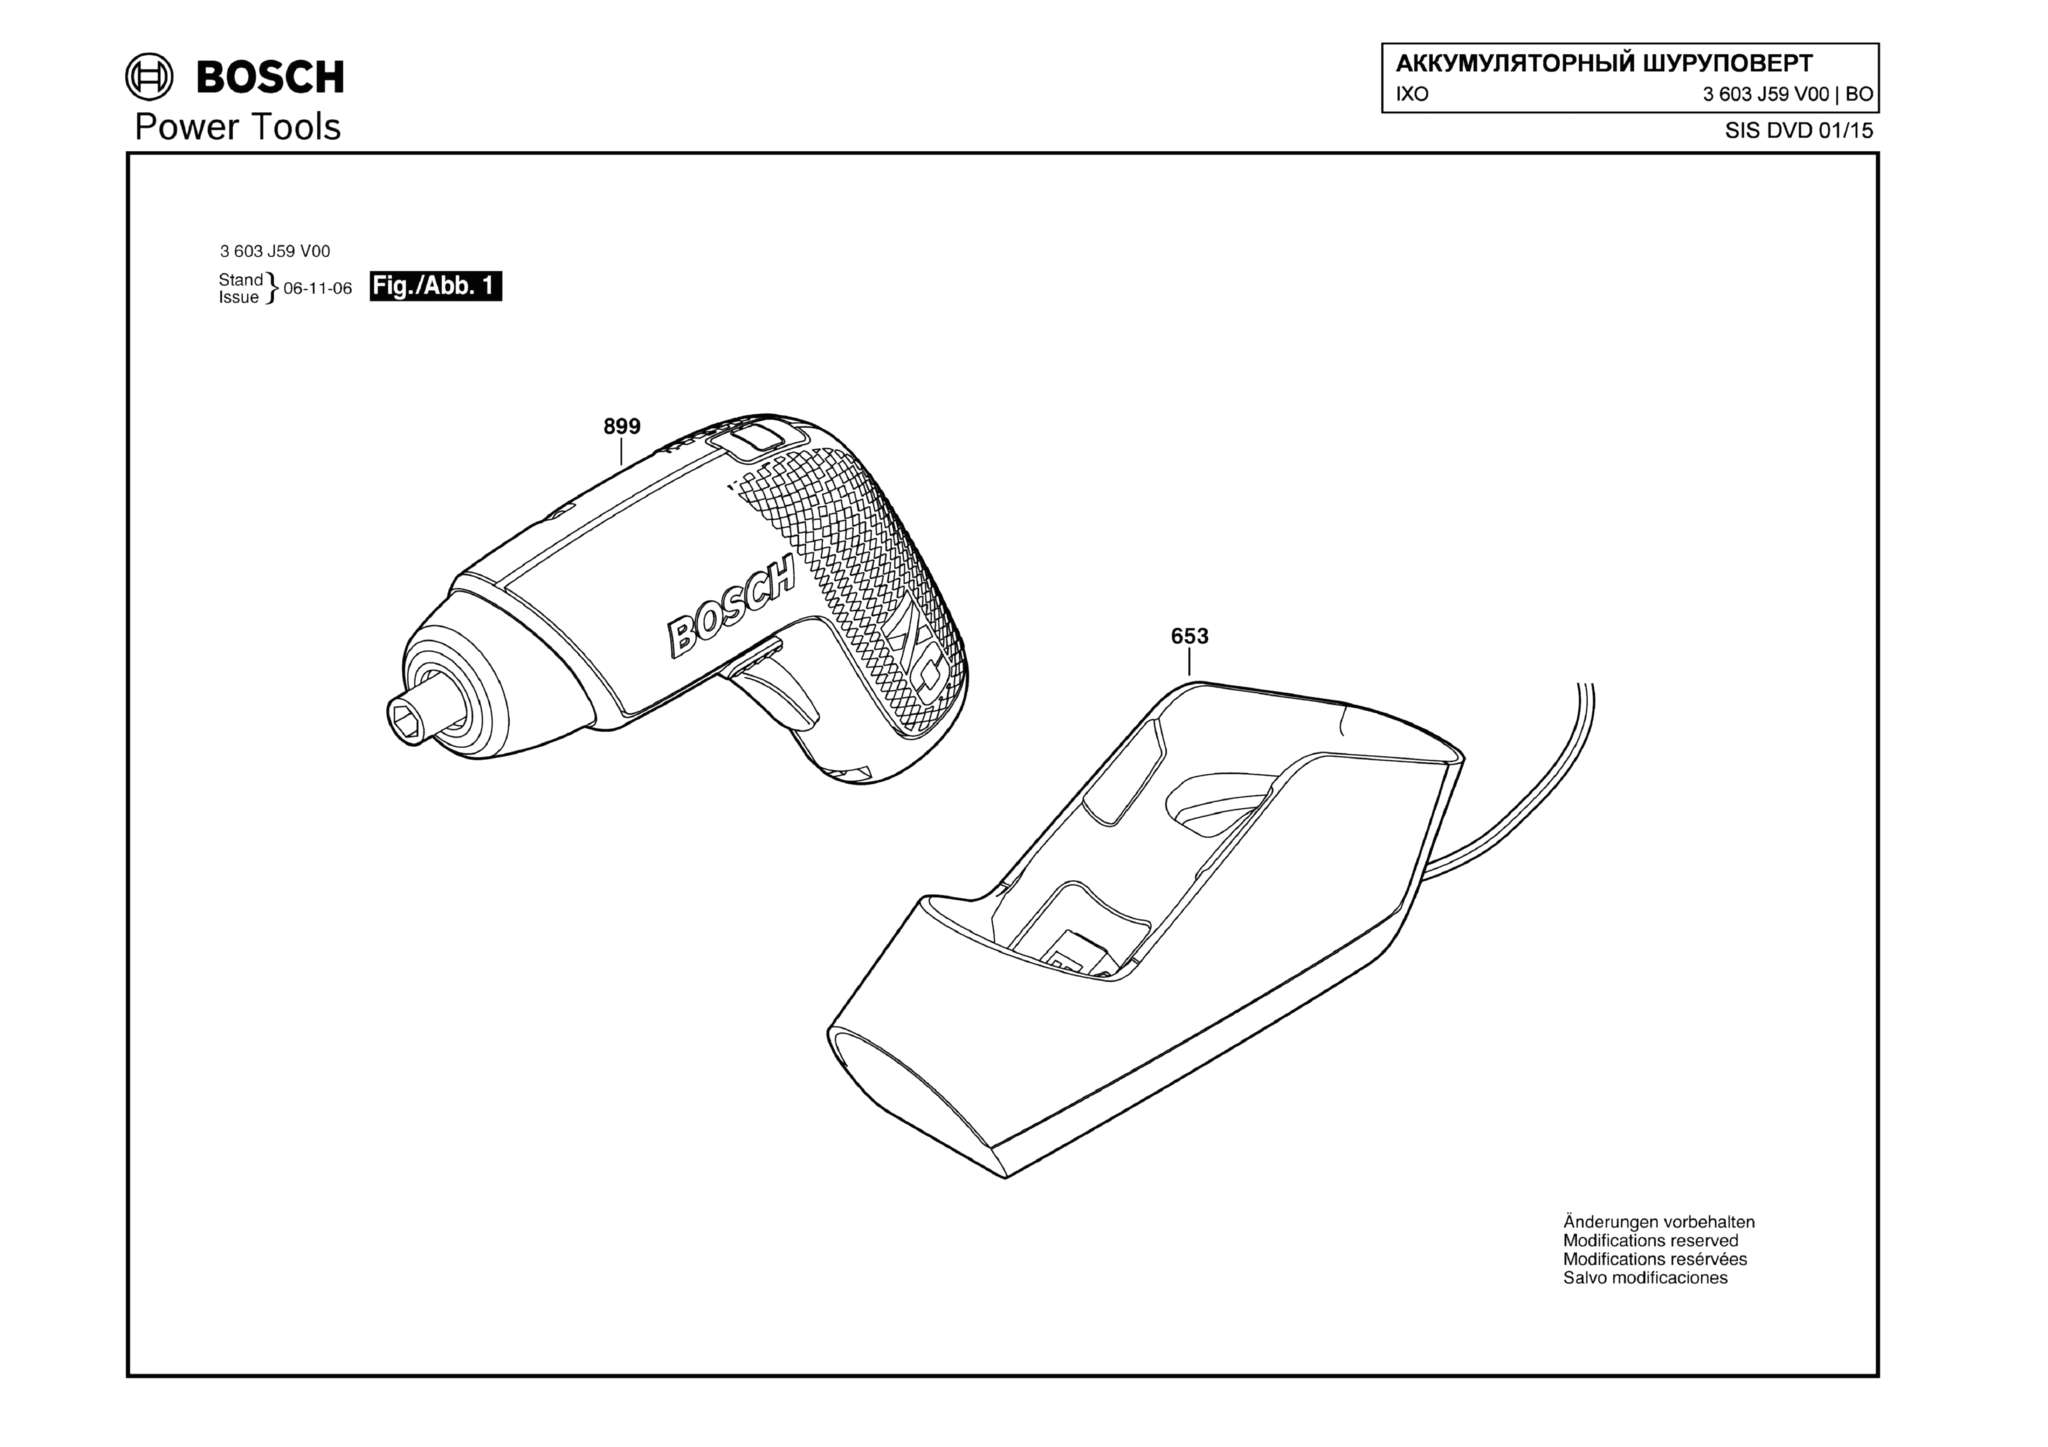 Запчасти, схема и деталировка Bosch IXO (ТИП 3603J59V00)